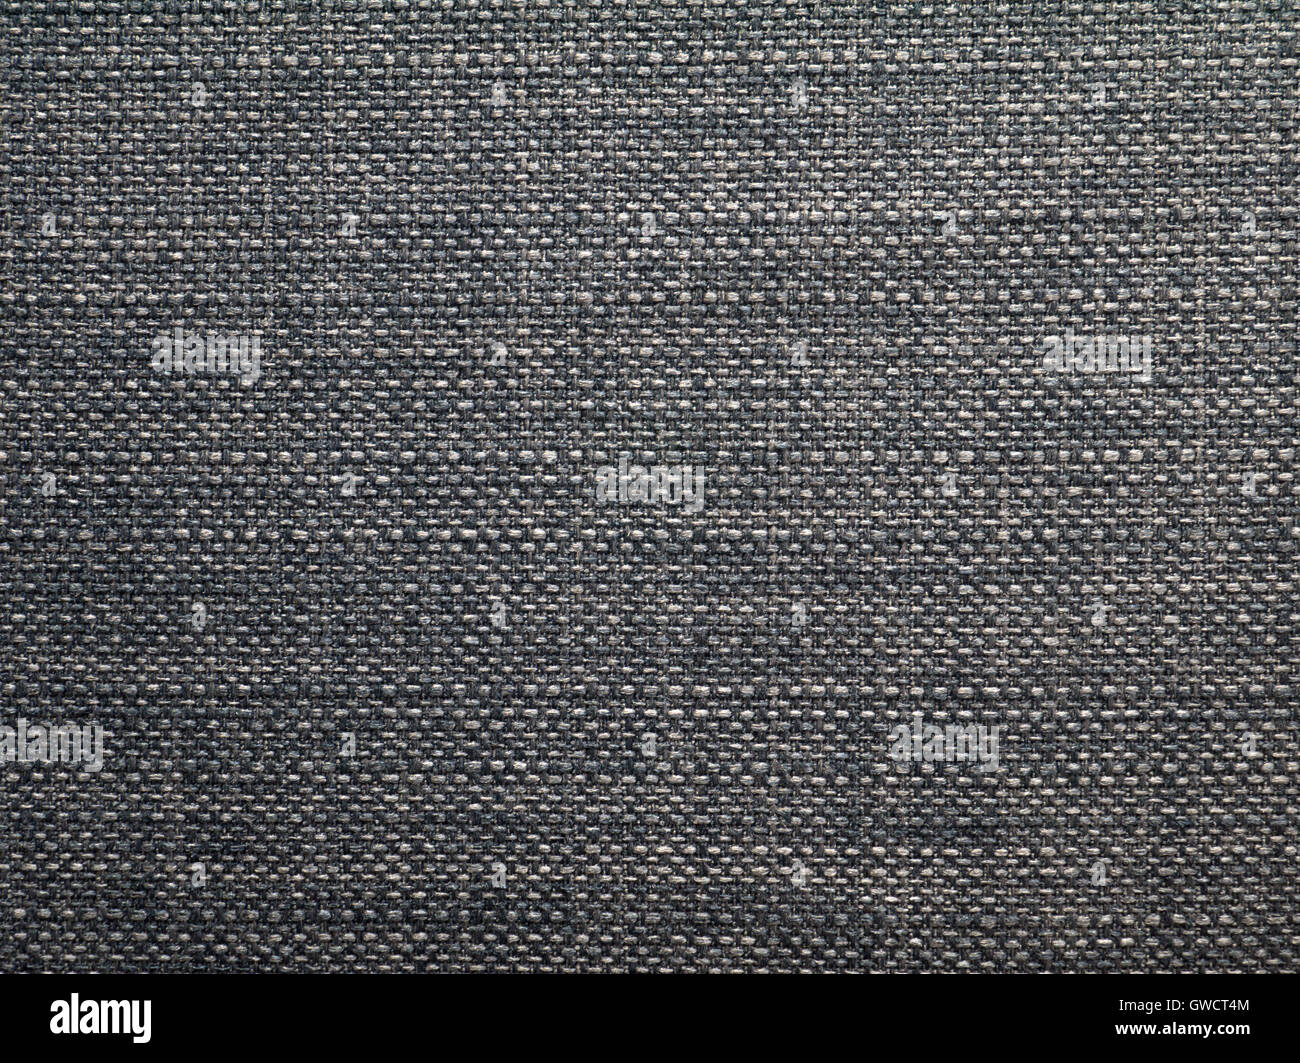 Dark grey casing canvas fabric texture closeup Stock Photo